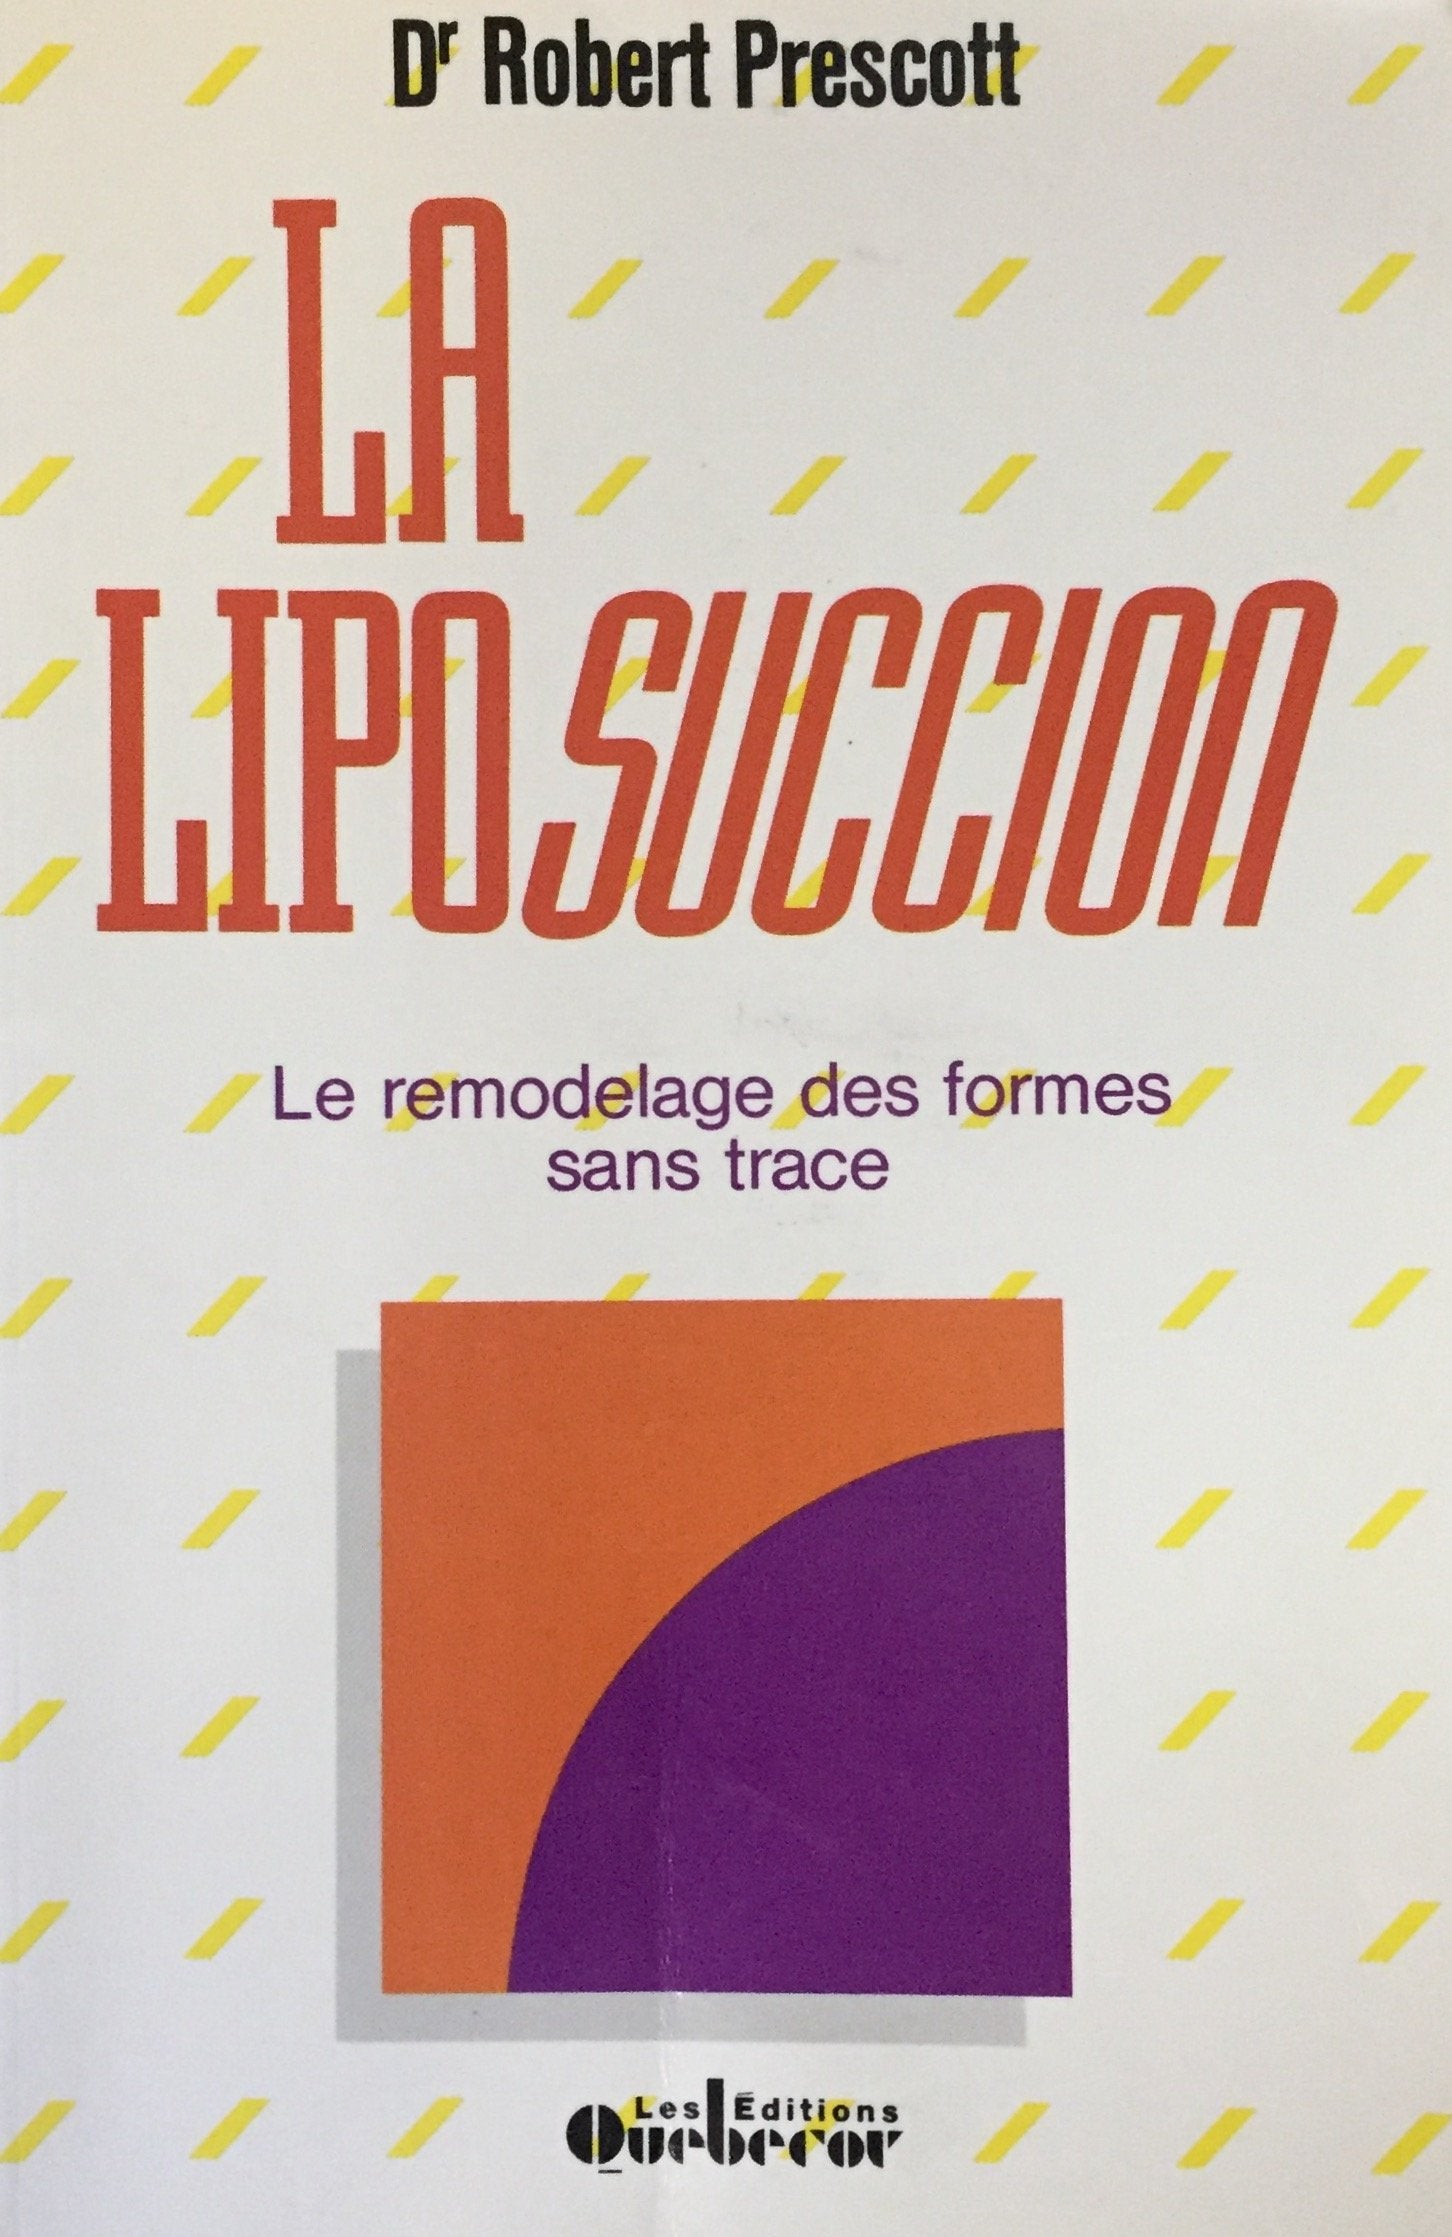 Livre ISBN 2890896862 La Liposuccion : Le remodelage des formes sans trace (Dr Robert Prescott)